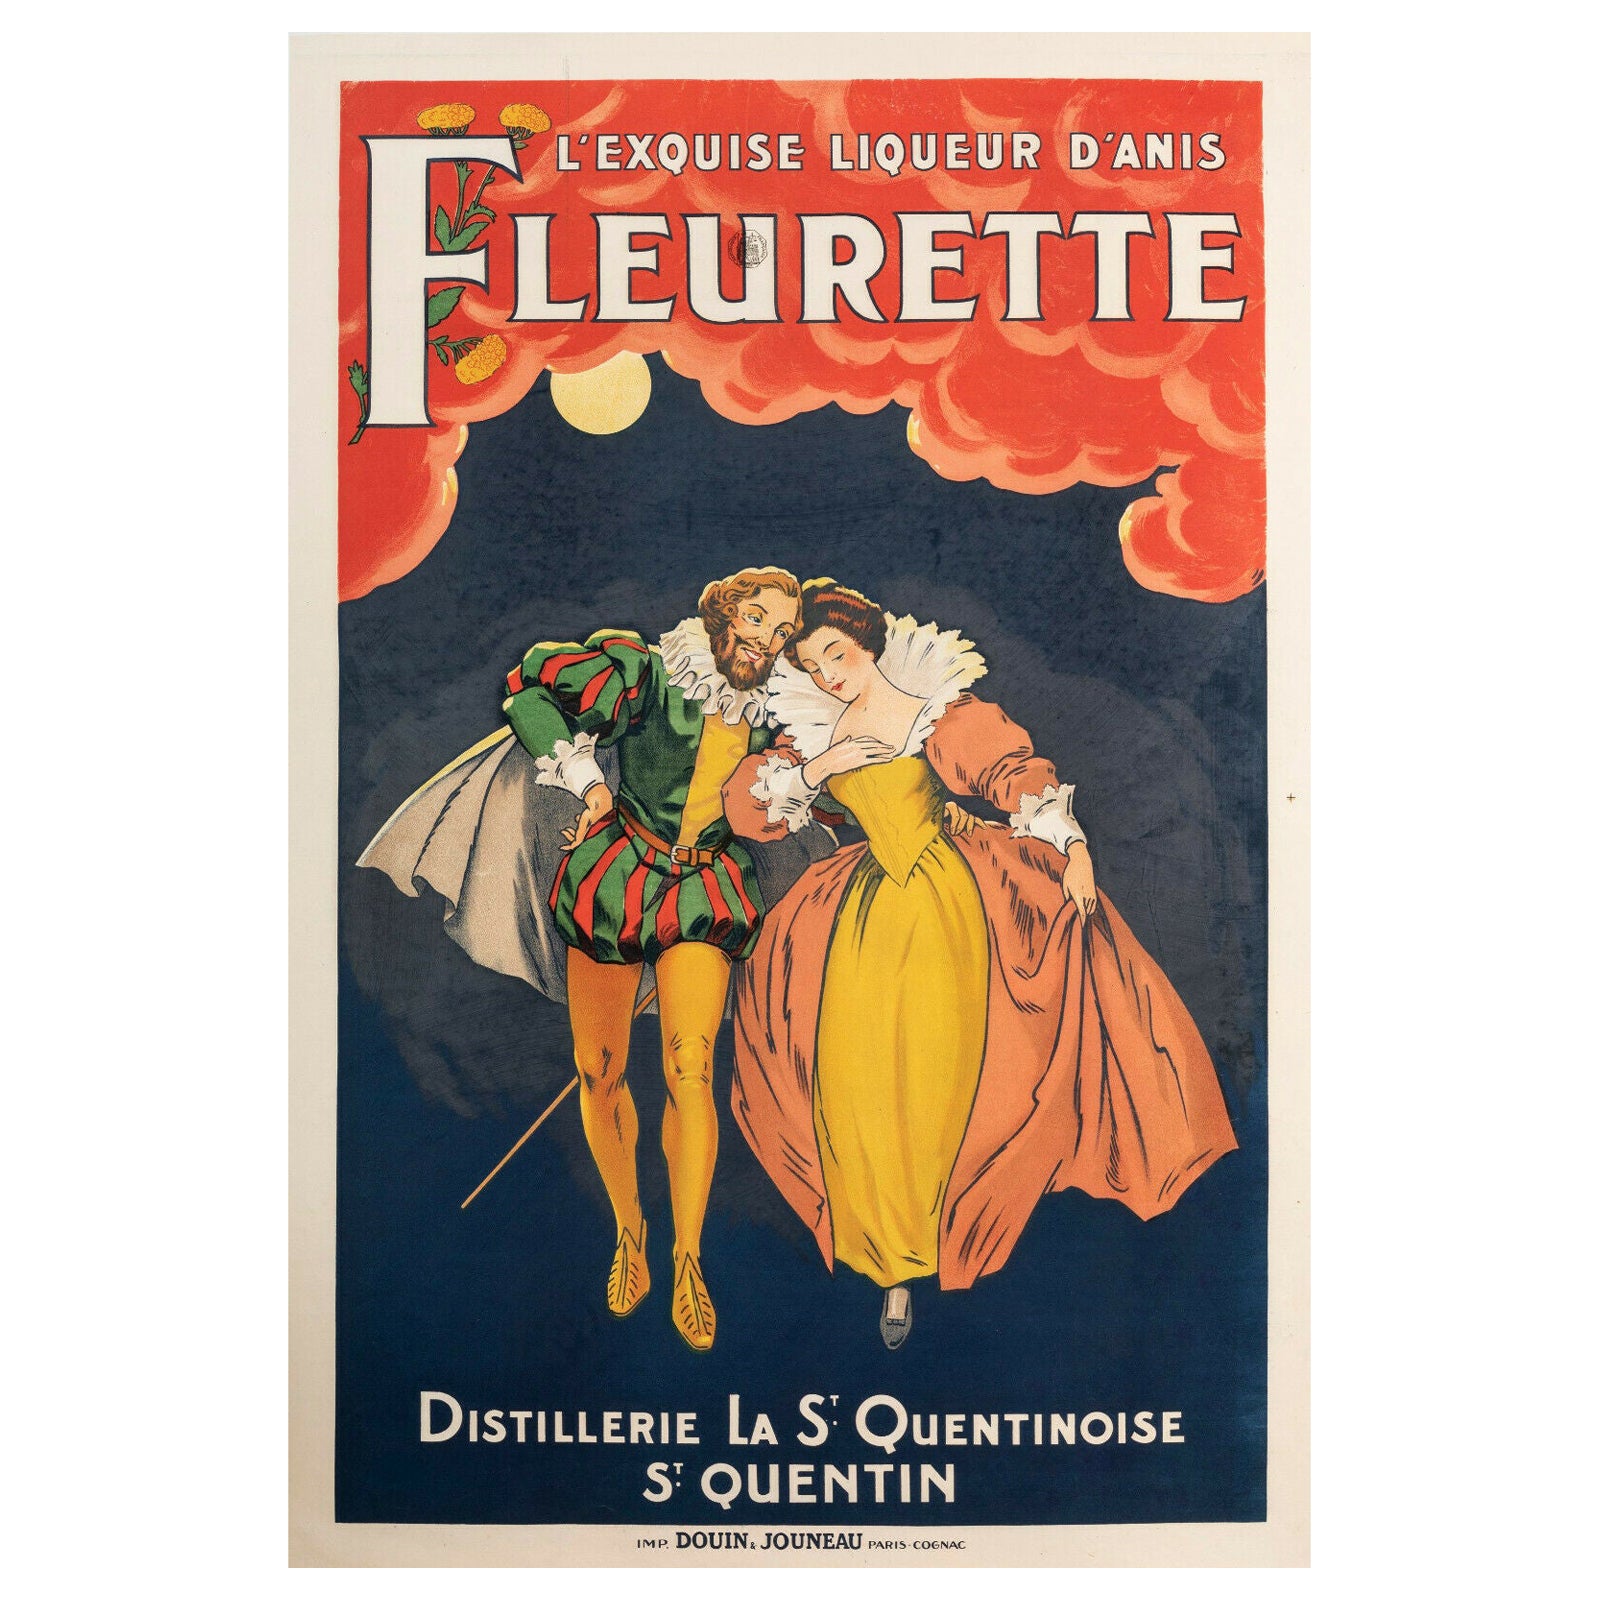 Original Vintage Poster-The Exquisite Anise Fleurette Liqueur, 1925